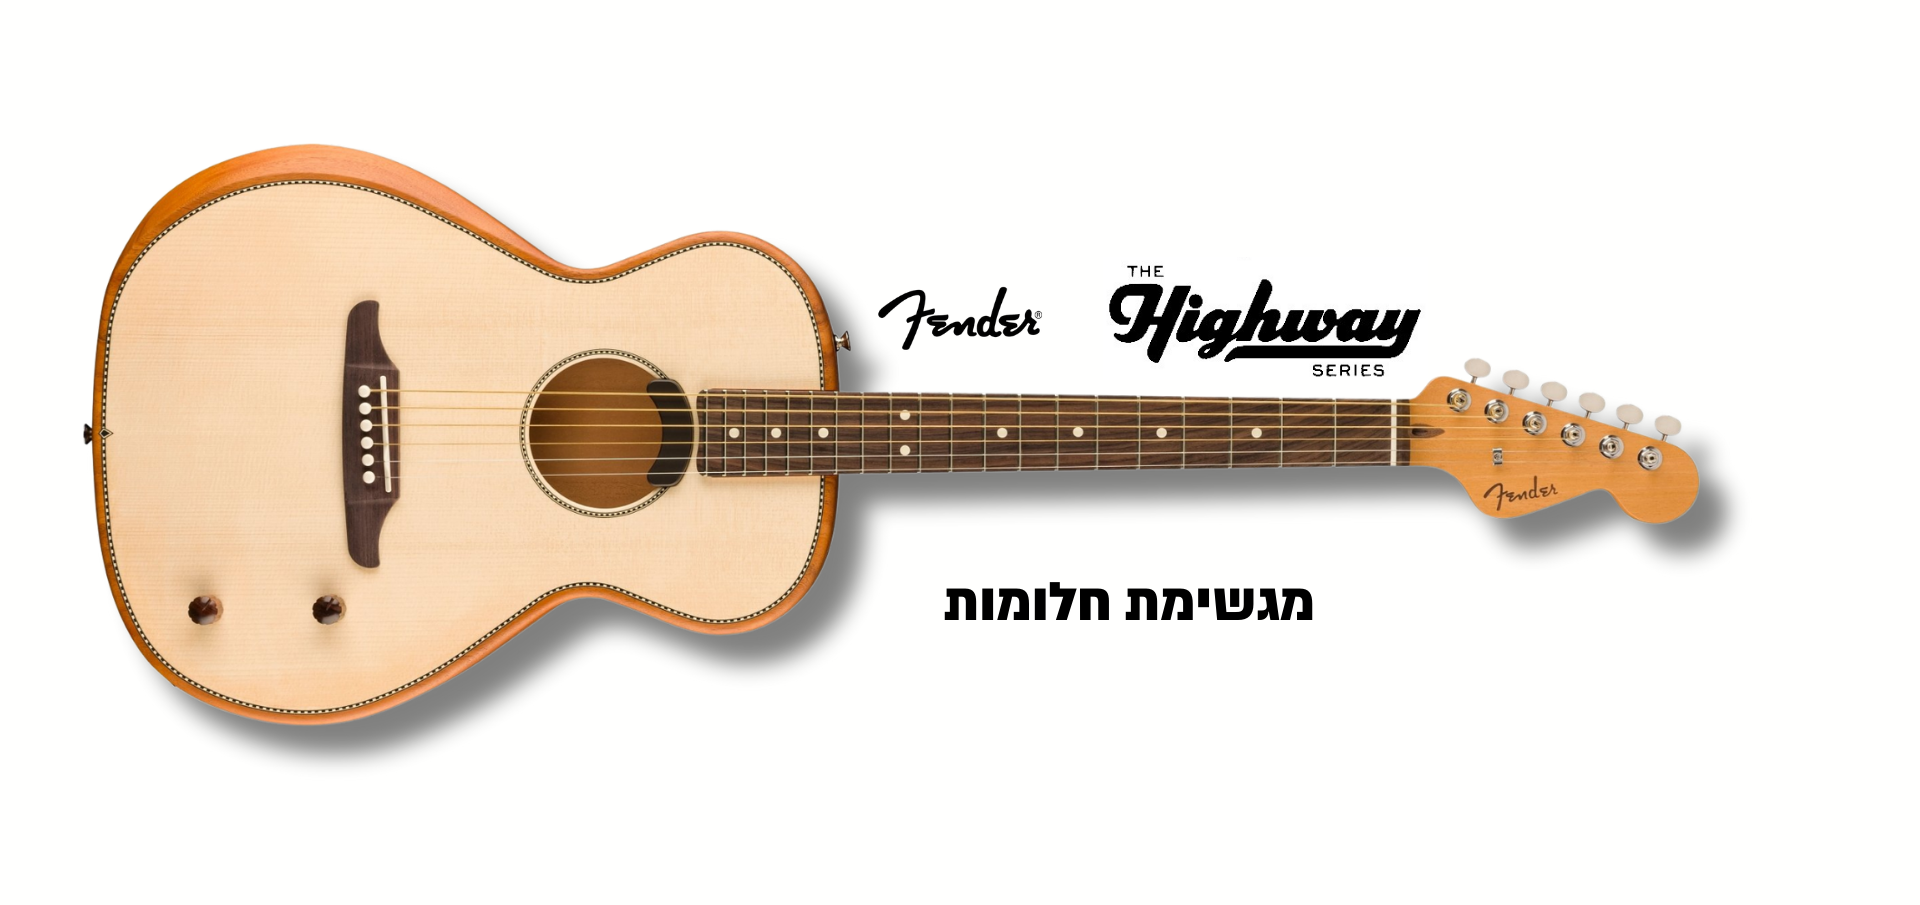 Fender Highway